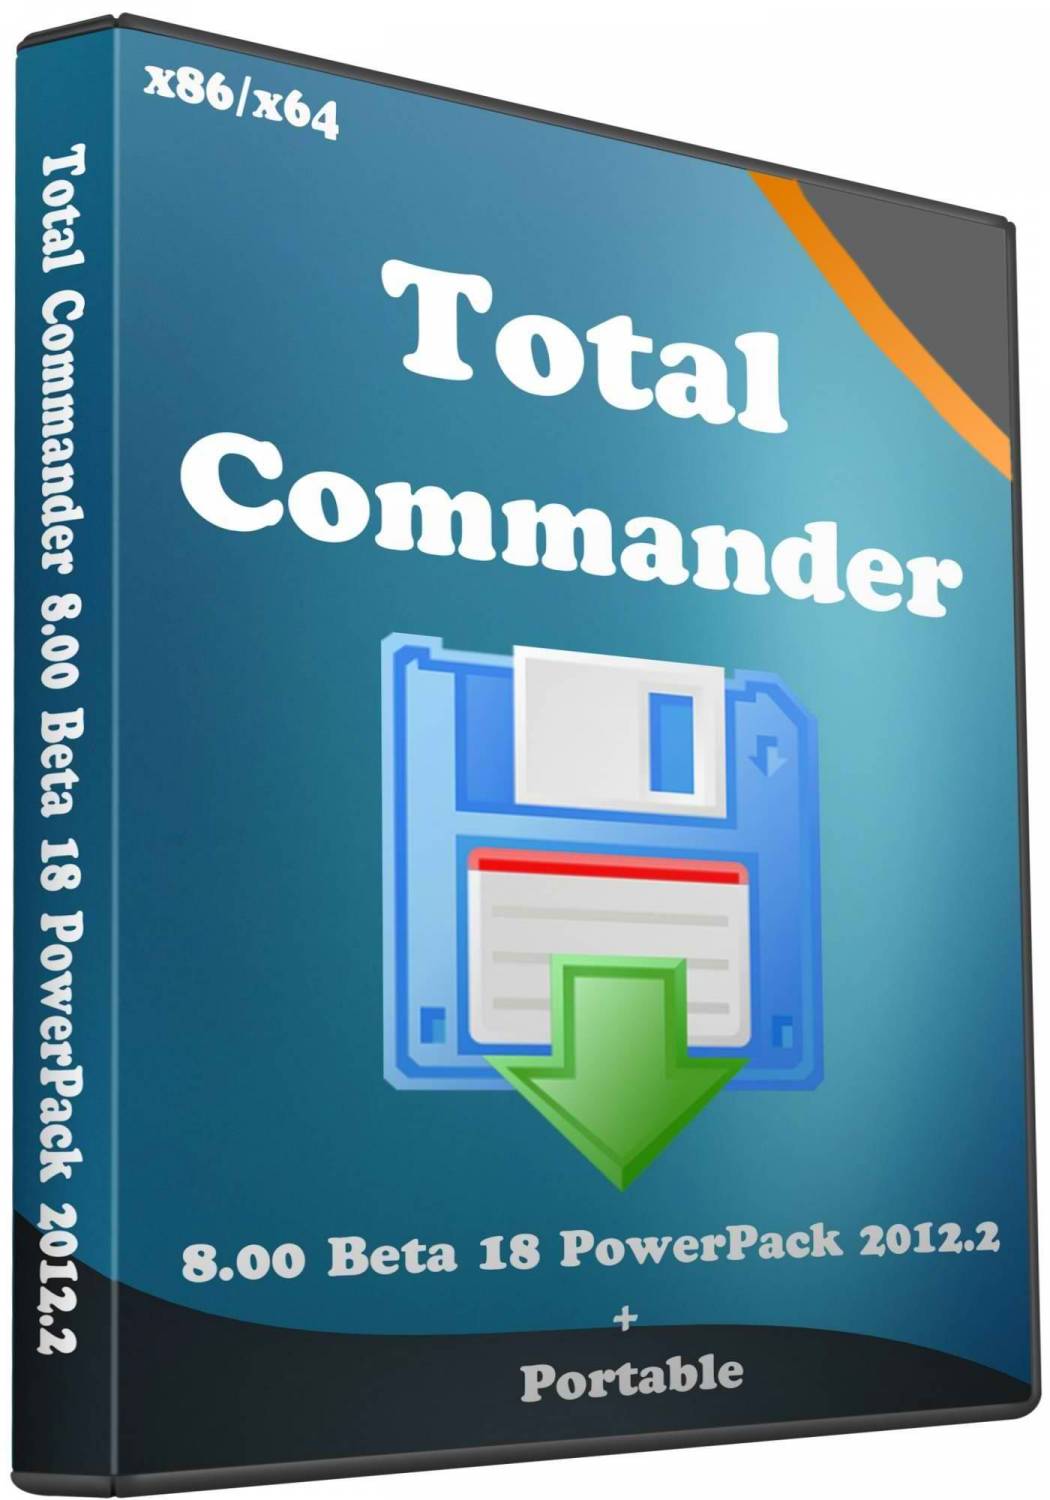 Total commander powerpack. Total Commander. Total Commander POWERPACK 9.51. Тотал коммандер 8.